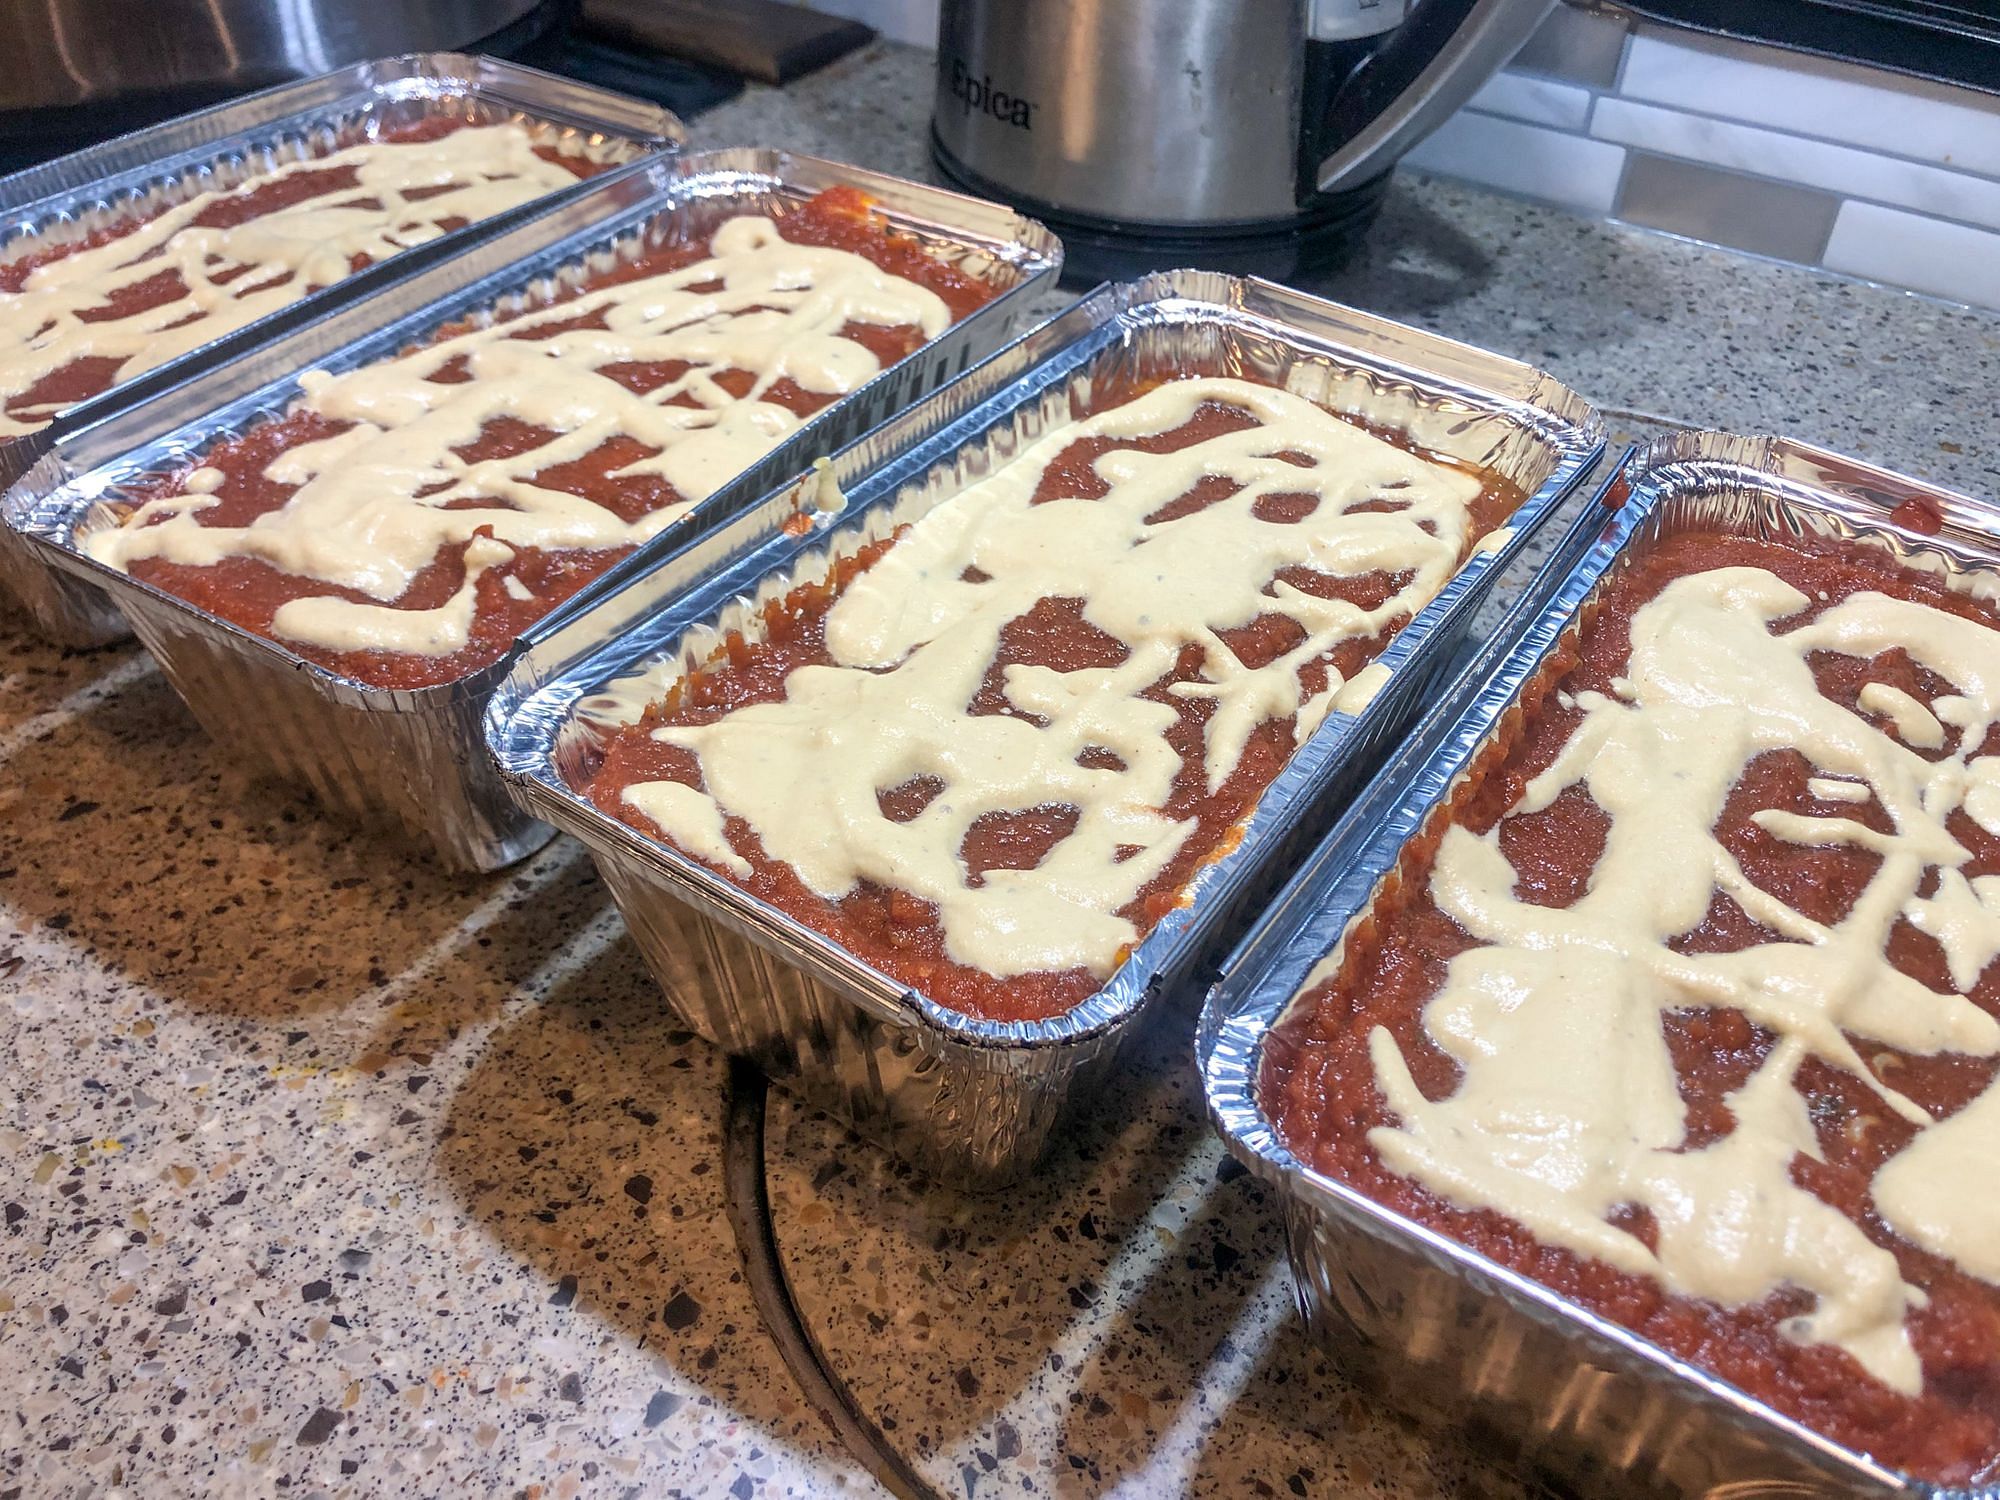 Sweet Potato Lasagna